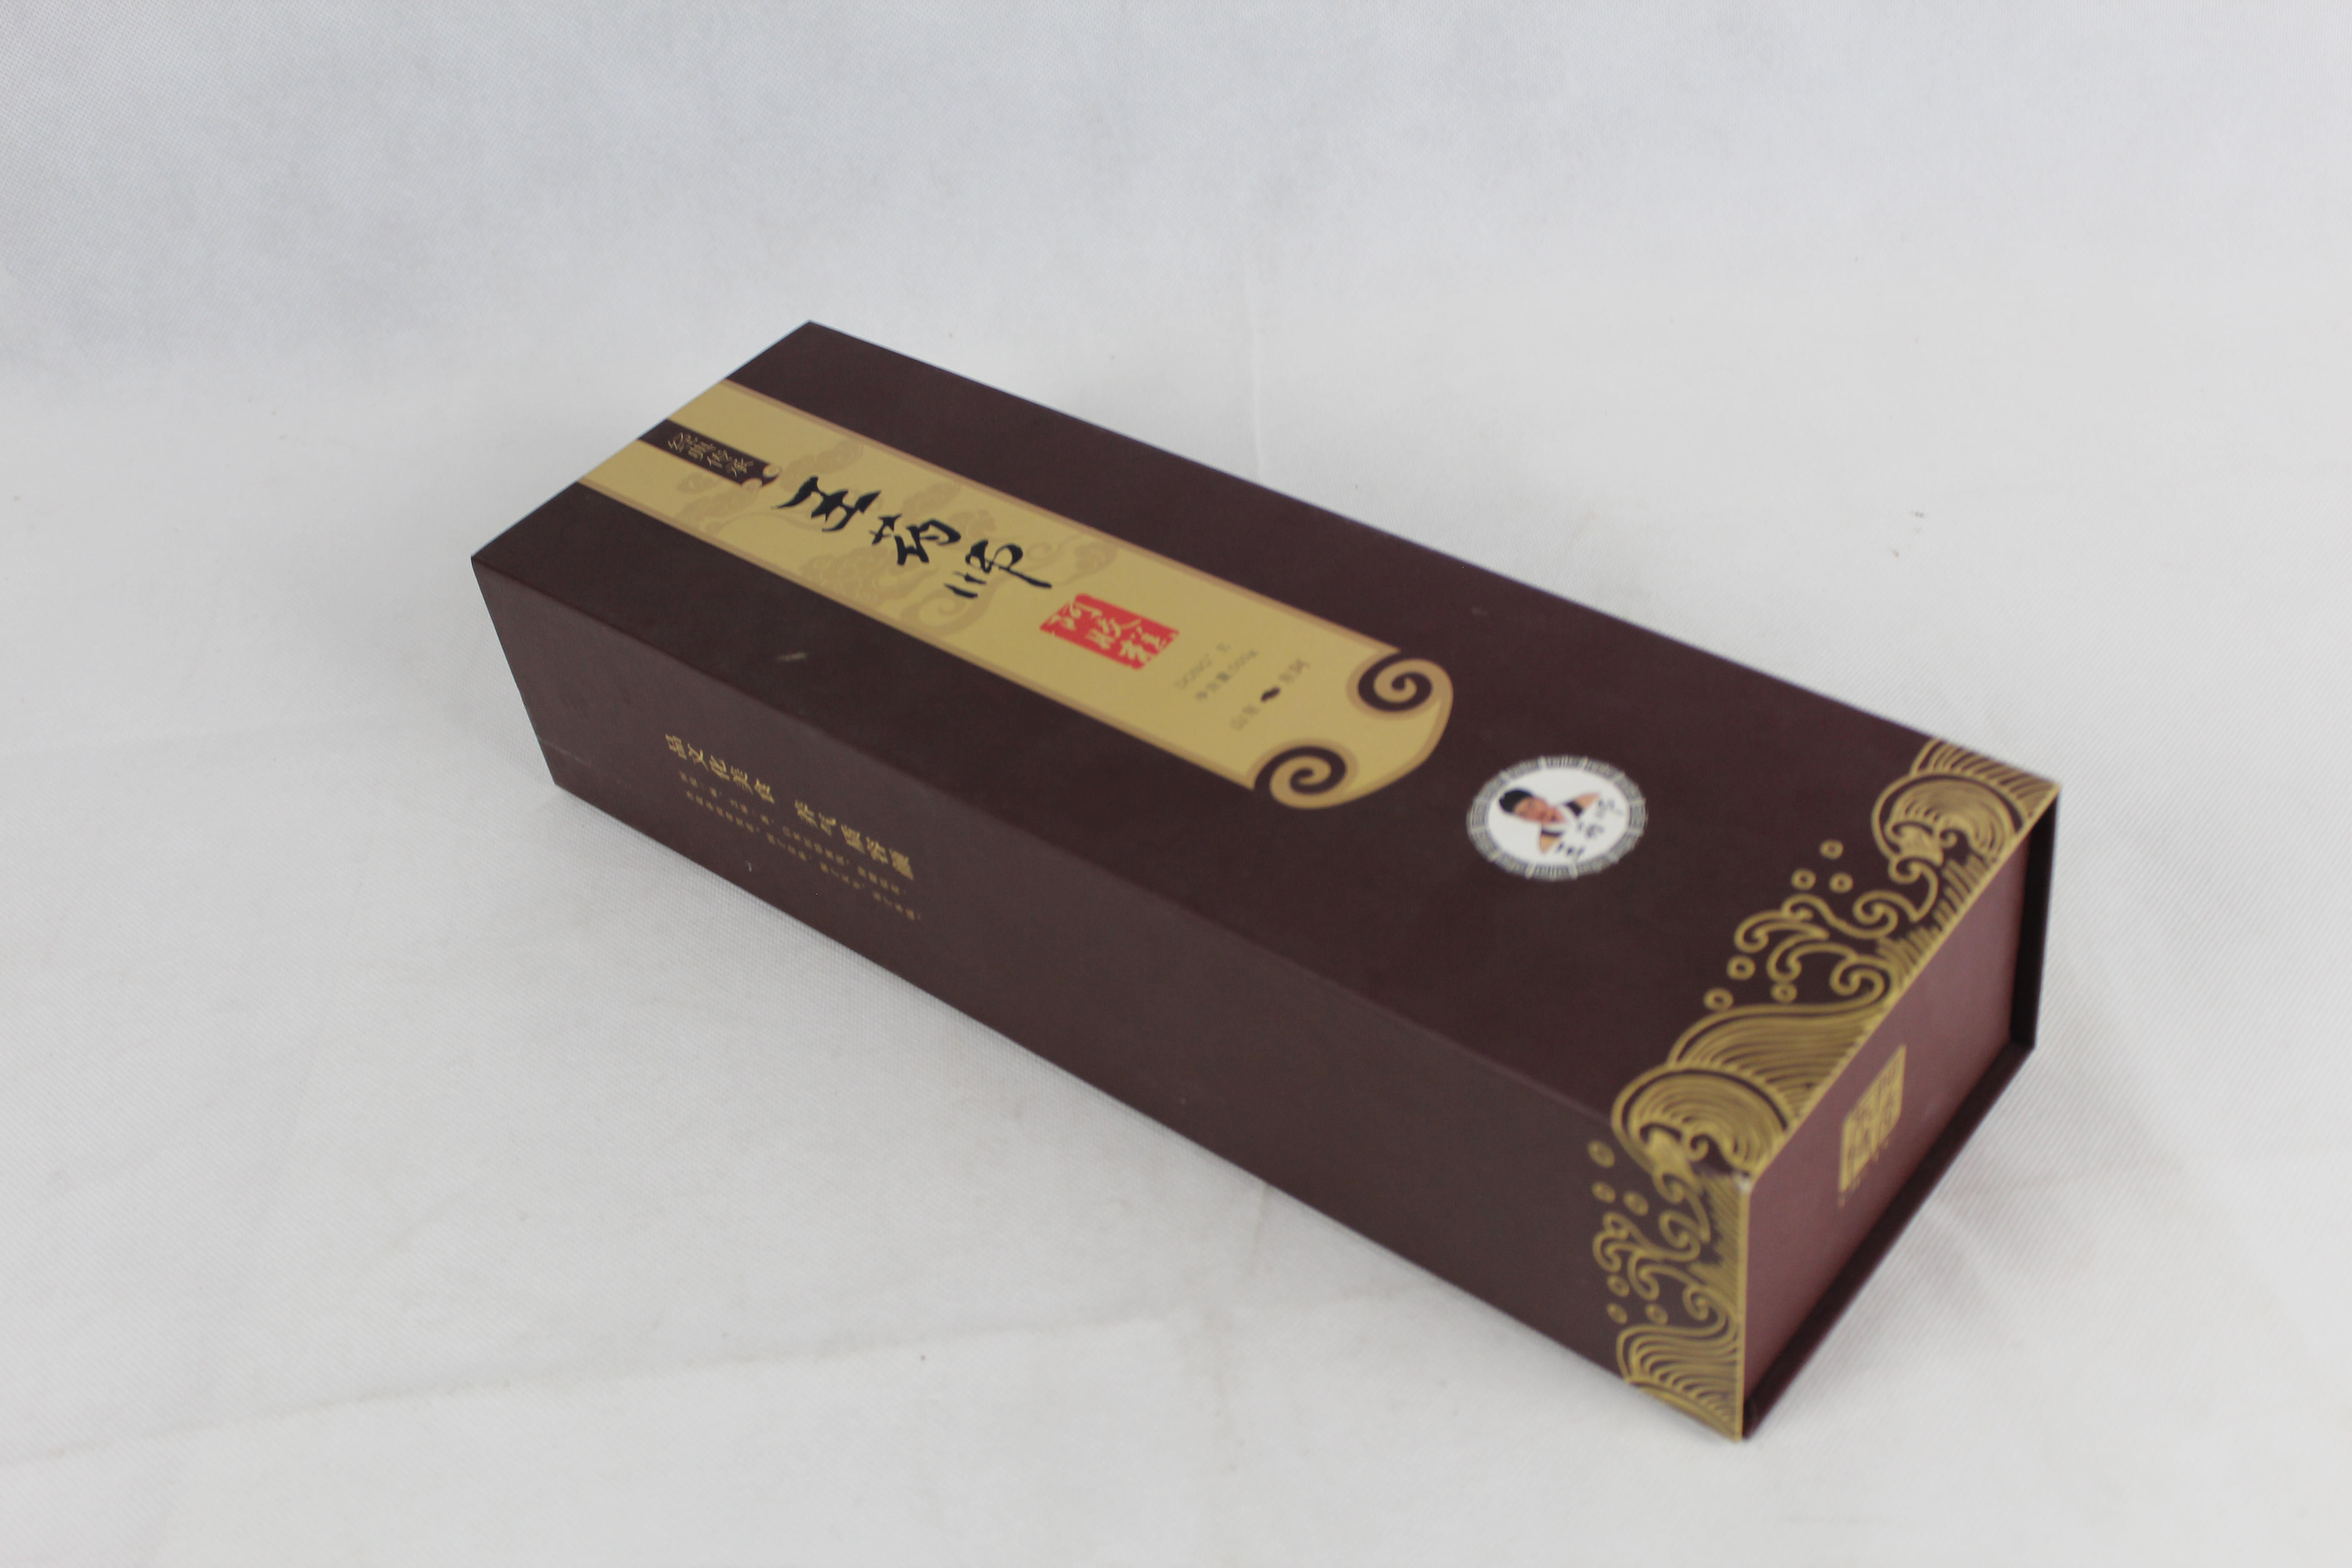 北京包装厂天地盖生产阿胶糕包装盒